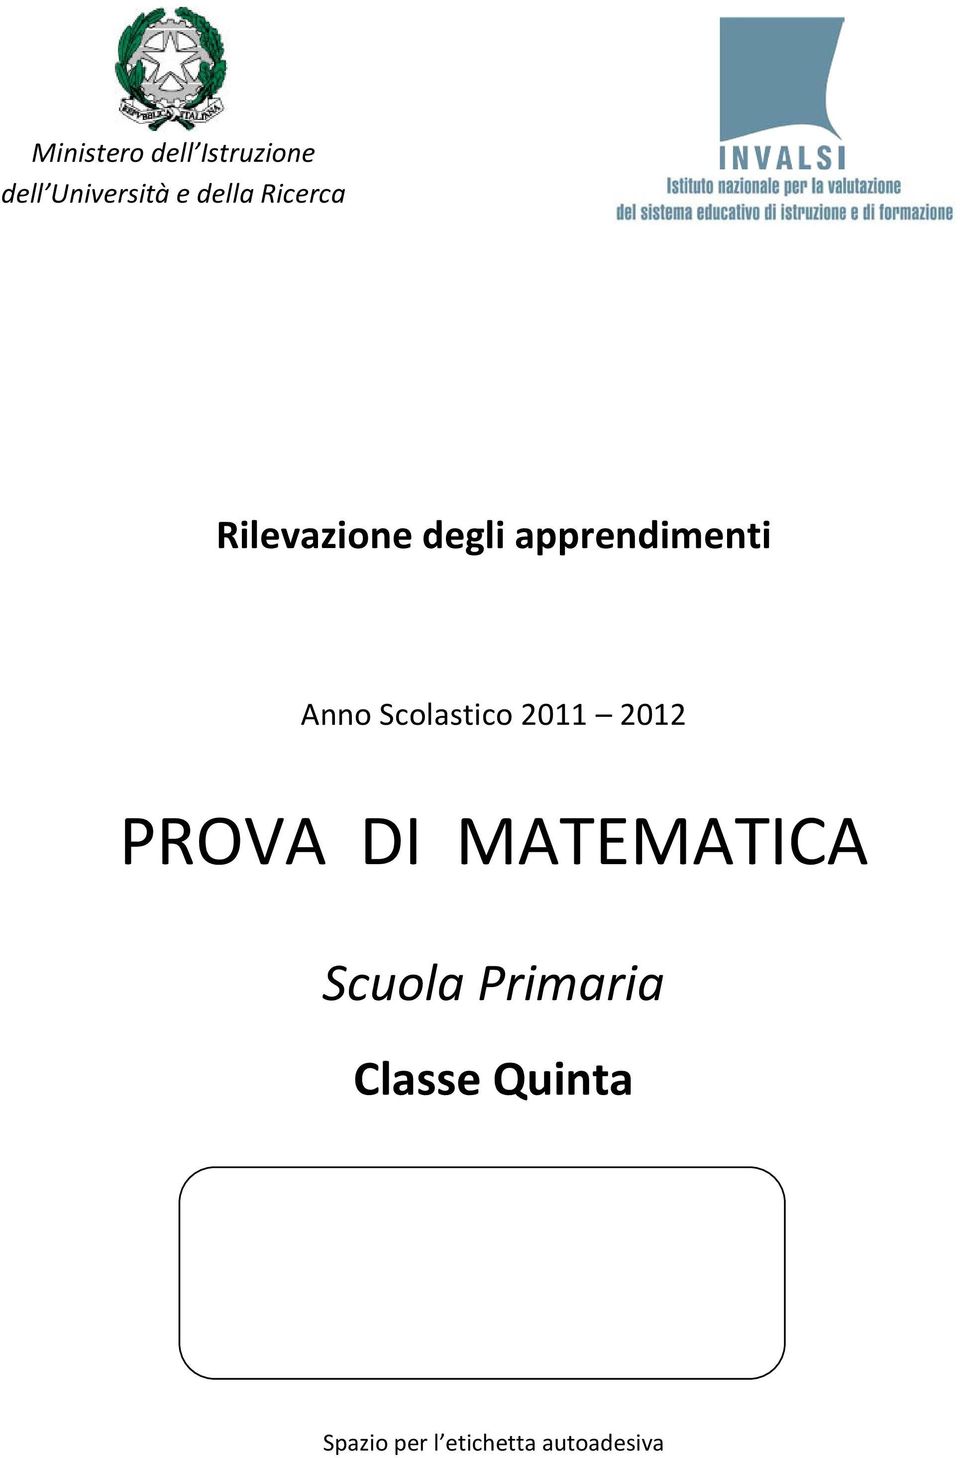 Scolastico 2011 2012 PROVA DI MATEMATICA Scuola